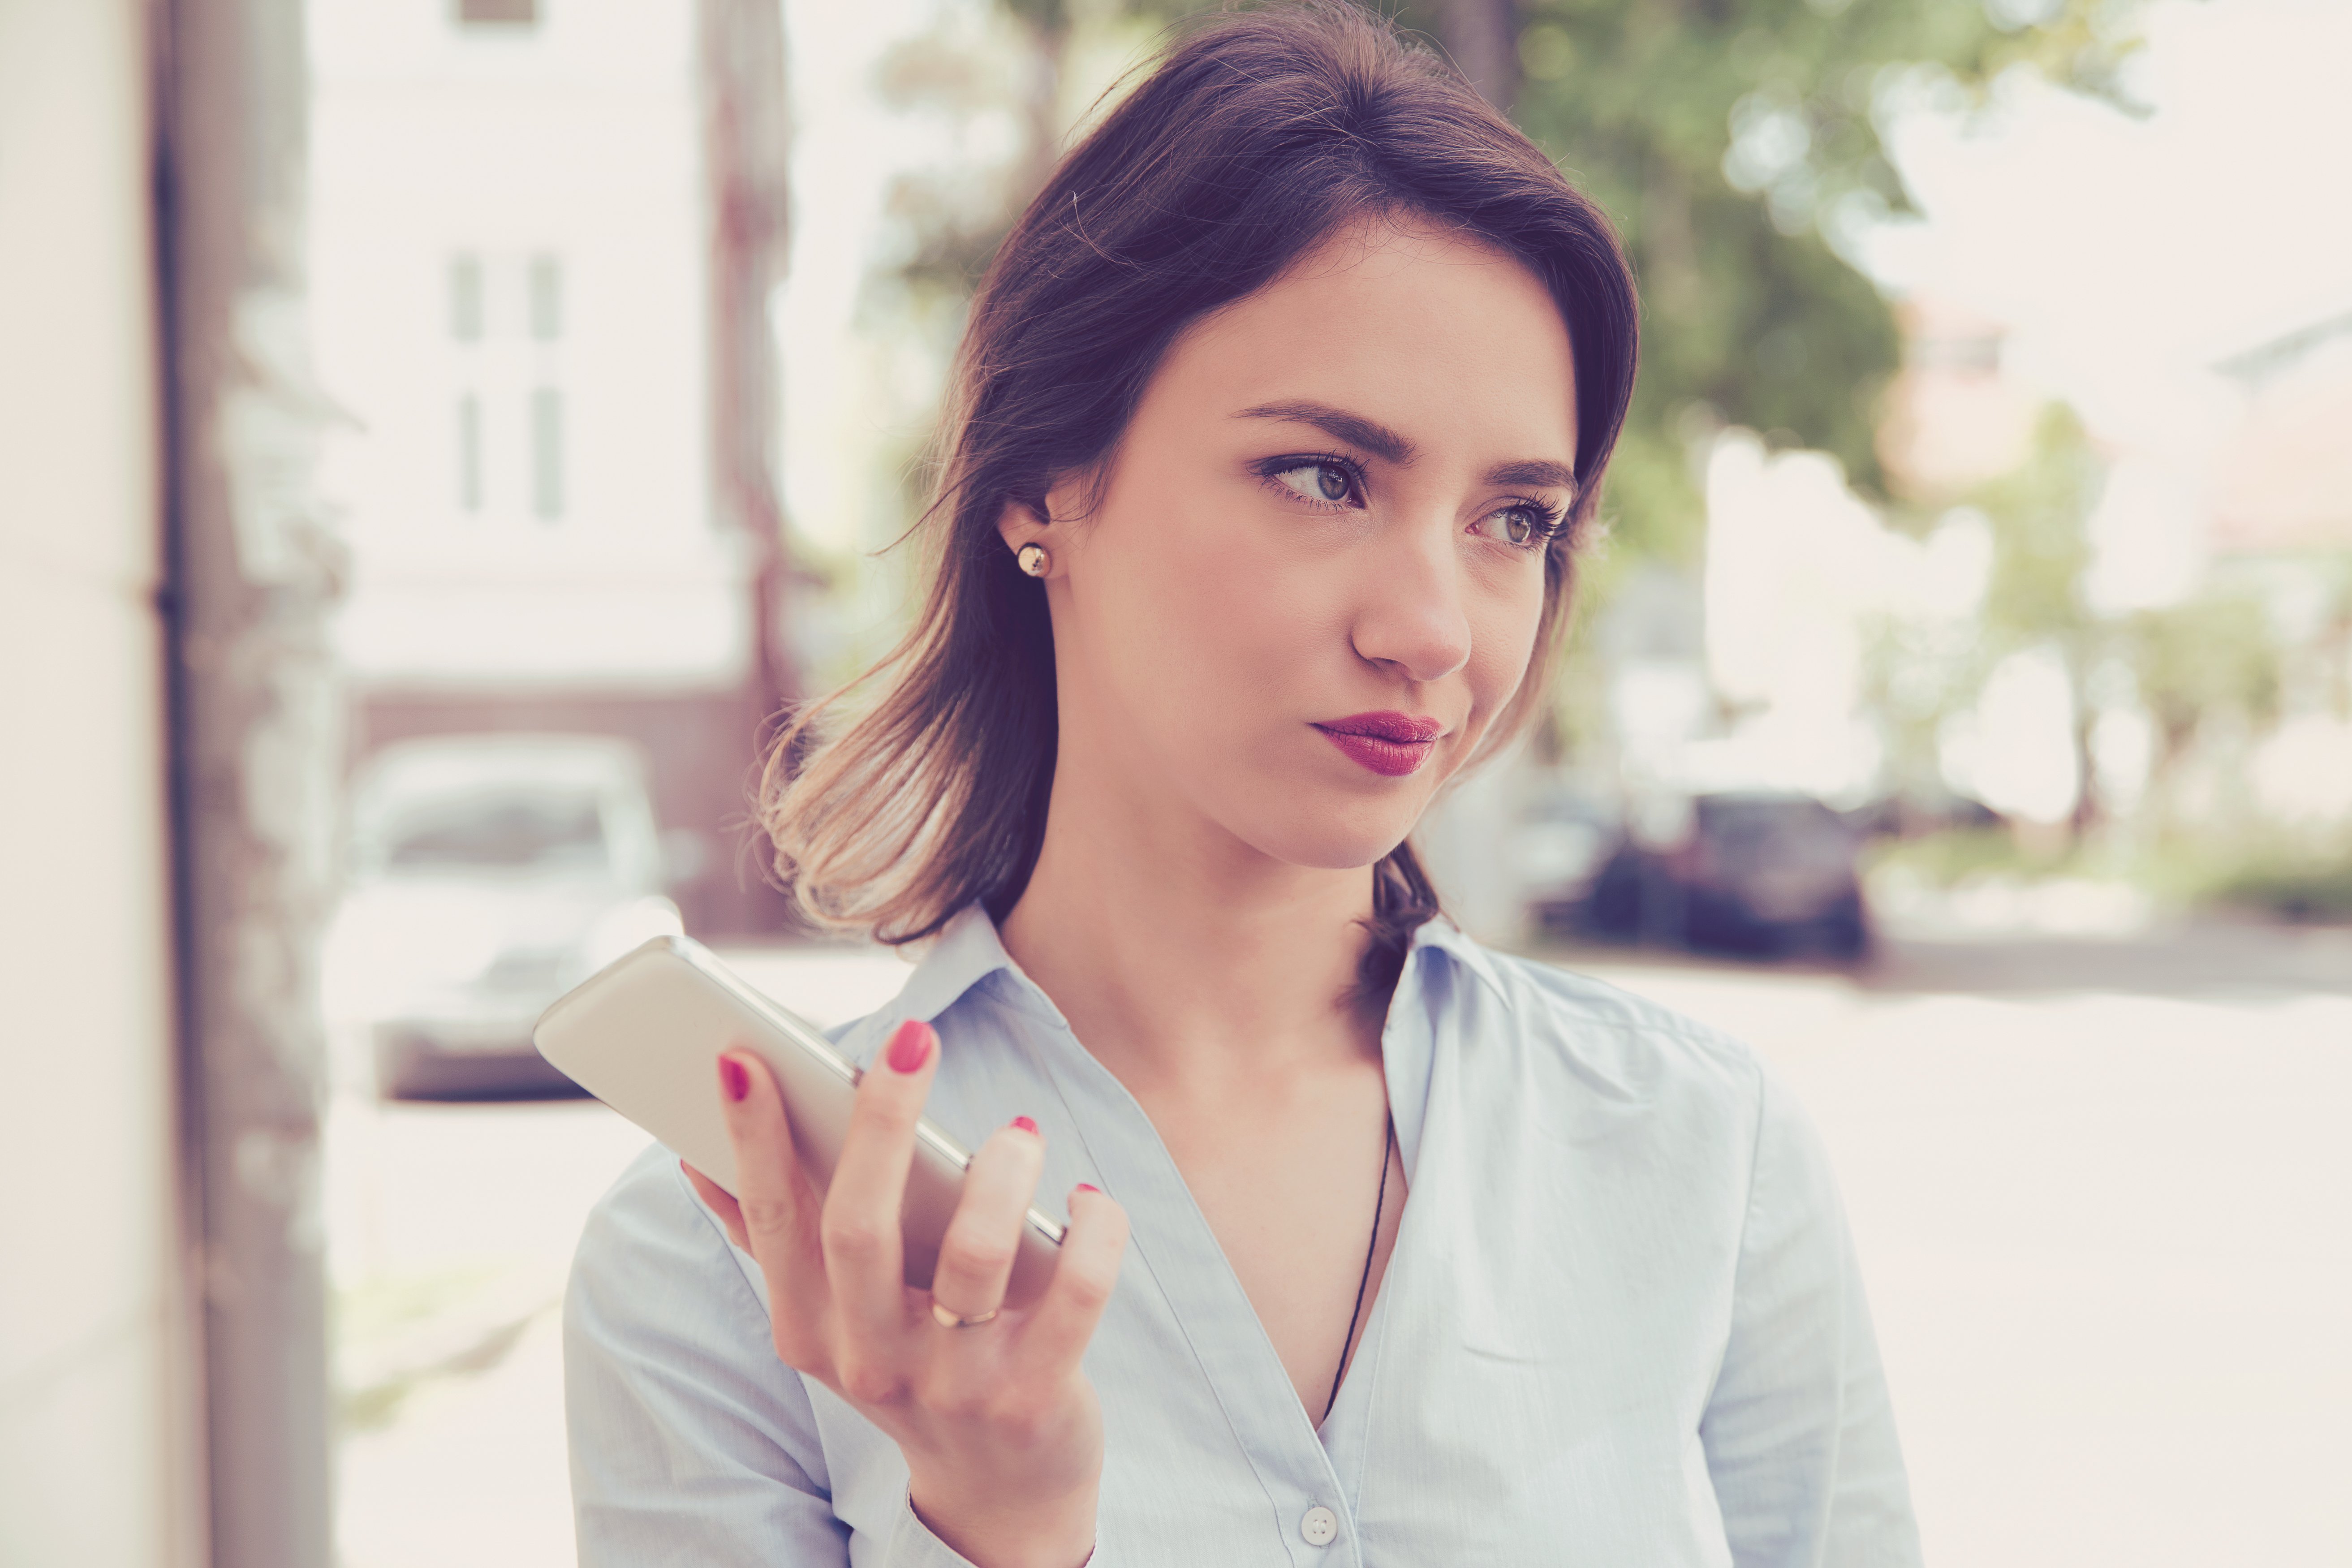 Mujer frustrada con teléfono en mano. | Fuente: Shutterstock